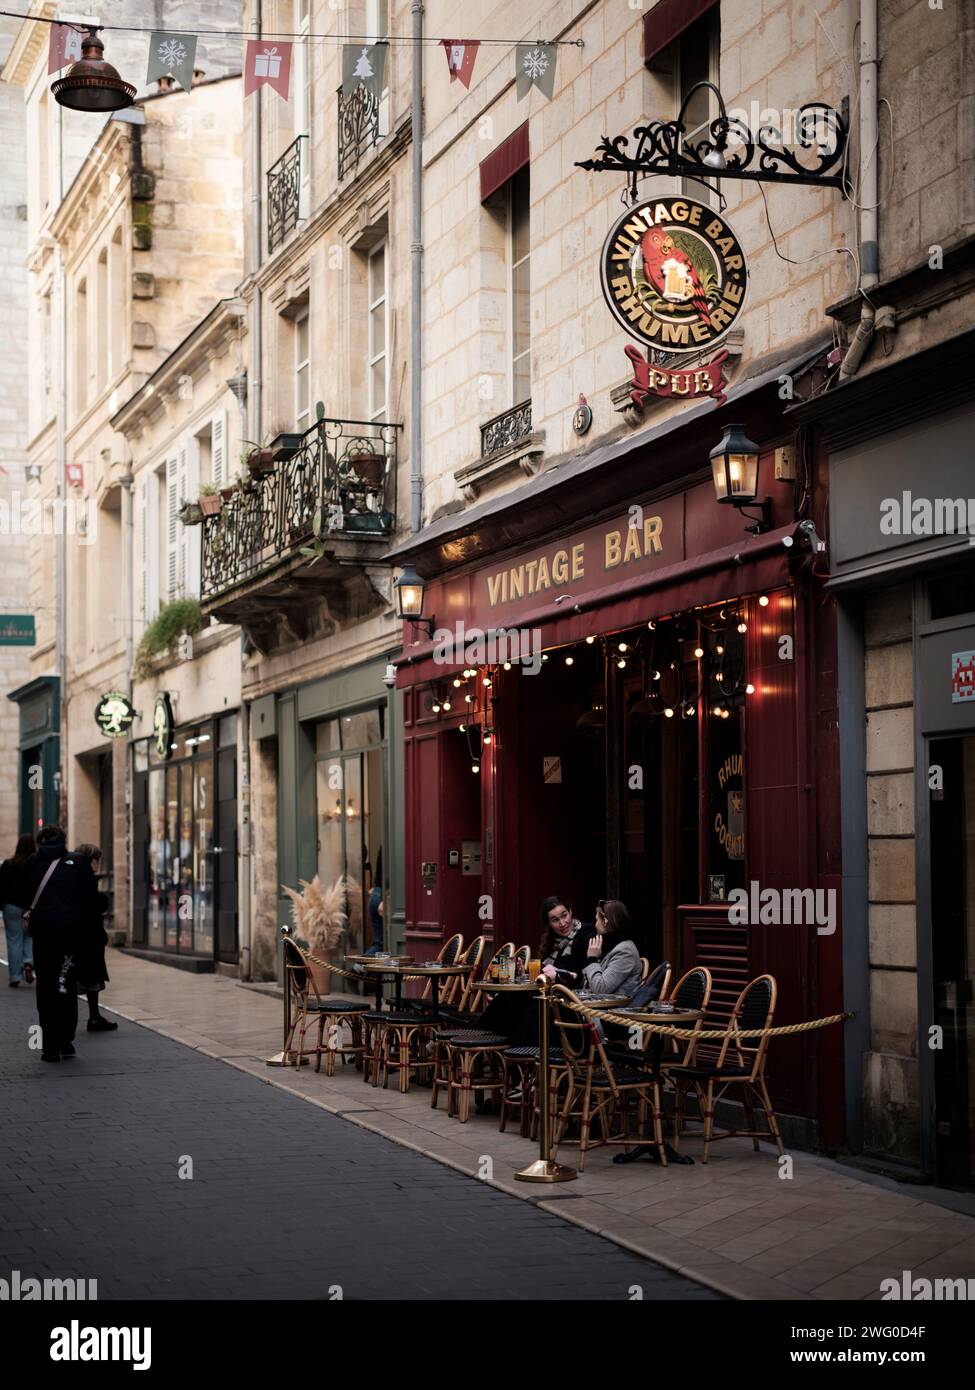 Das tägliche Leben in den Straßen von Bordeaux an einem sonnigen Wintertag. Bordeaux ist bekannt als die Weinhauptstadt der Welt und ist die sechstgrößte Stadt Frankreichs. Stockfoto